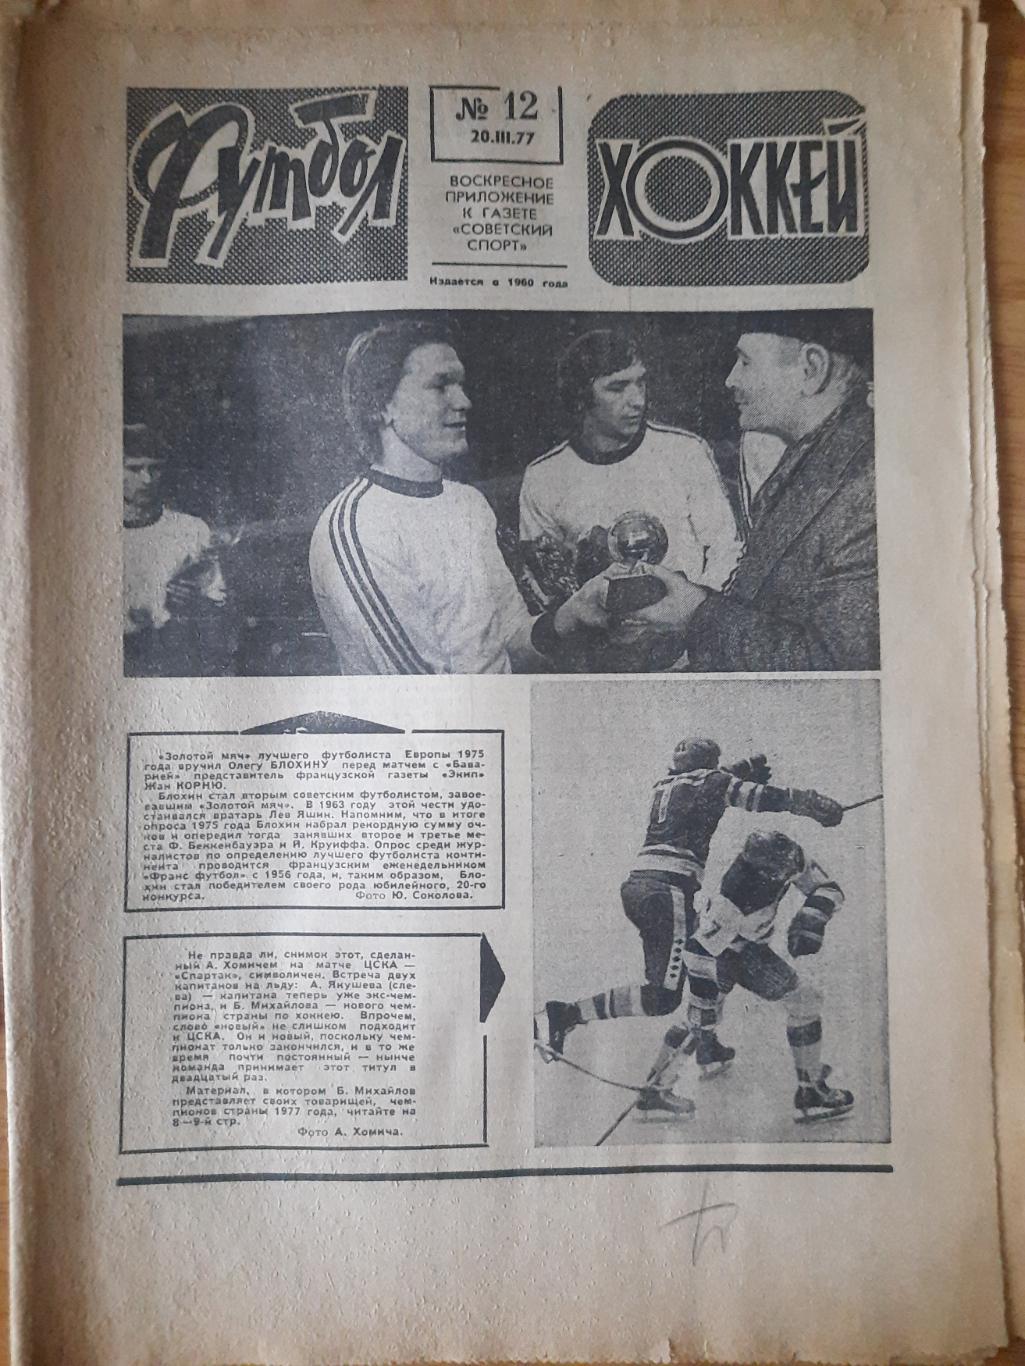 еженедельник футбол-хоккей #12,1977